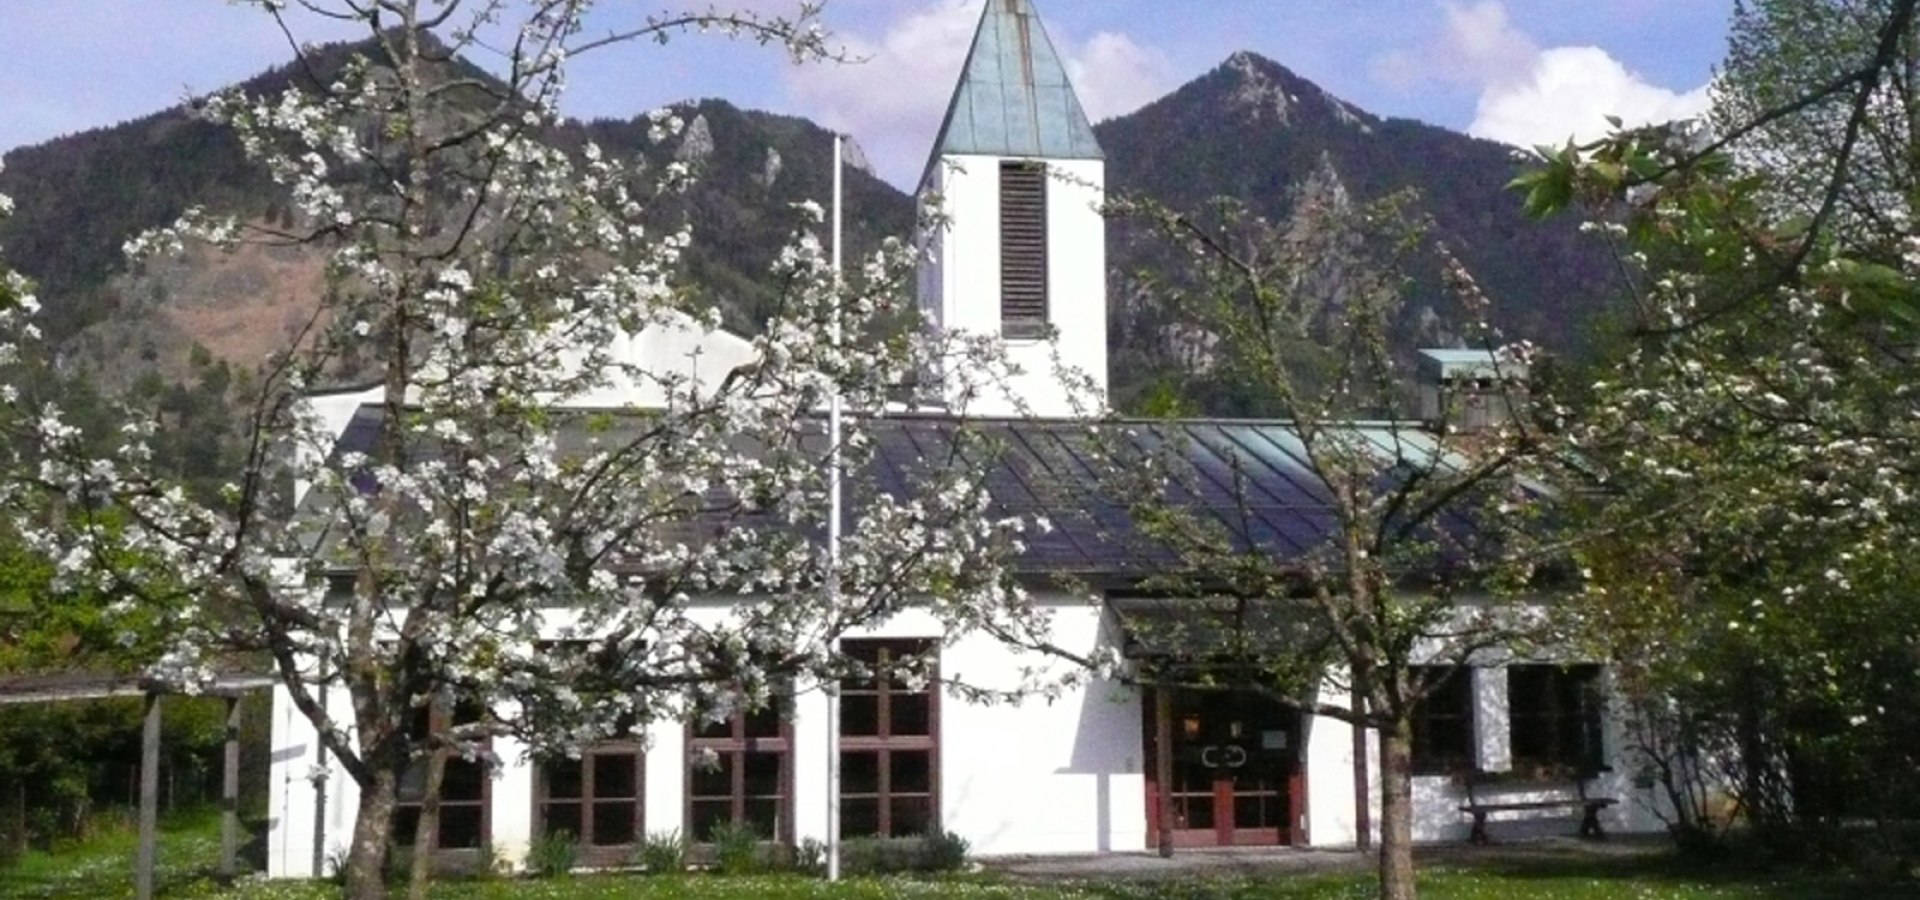 Kirche Marquartstein, © Evangelisch-lutherische Kirchengemeinde Grassau, Unterwössen, Schleching, Staudach-Egerndach, Marquartstein